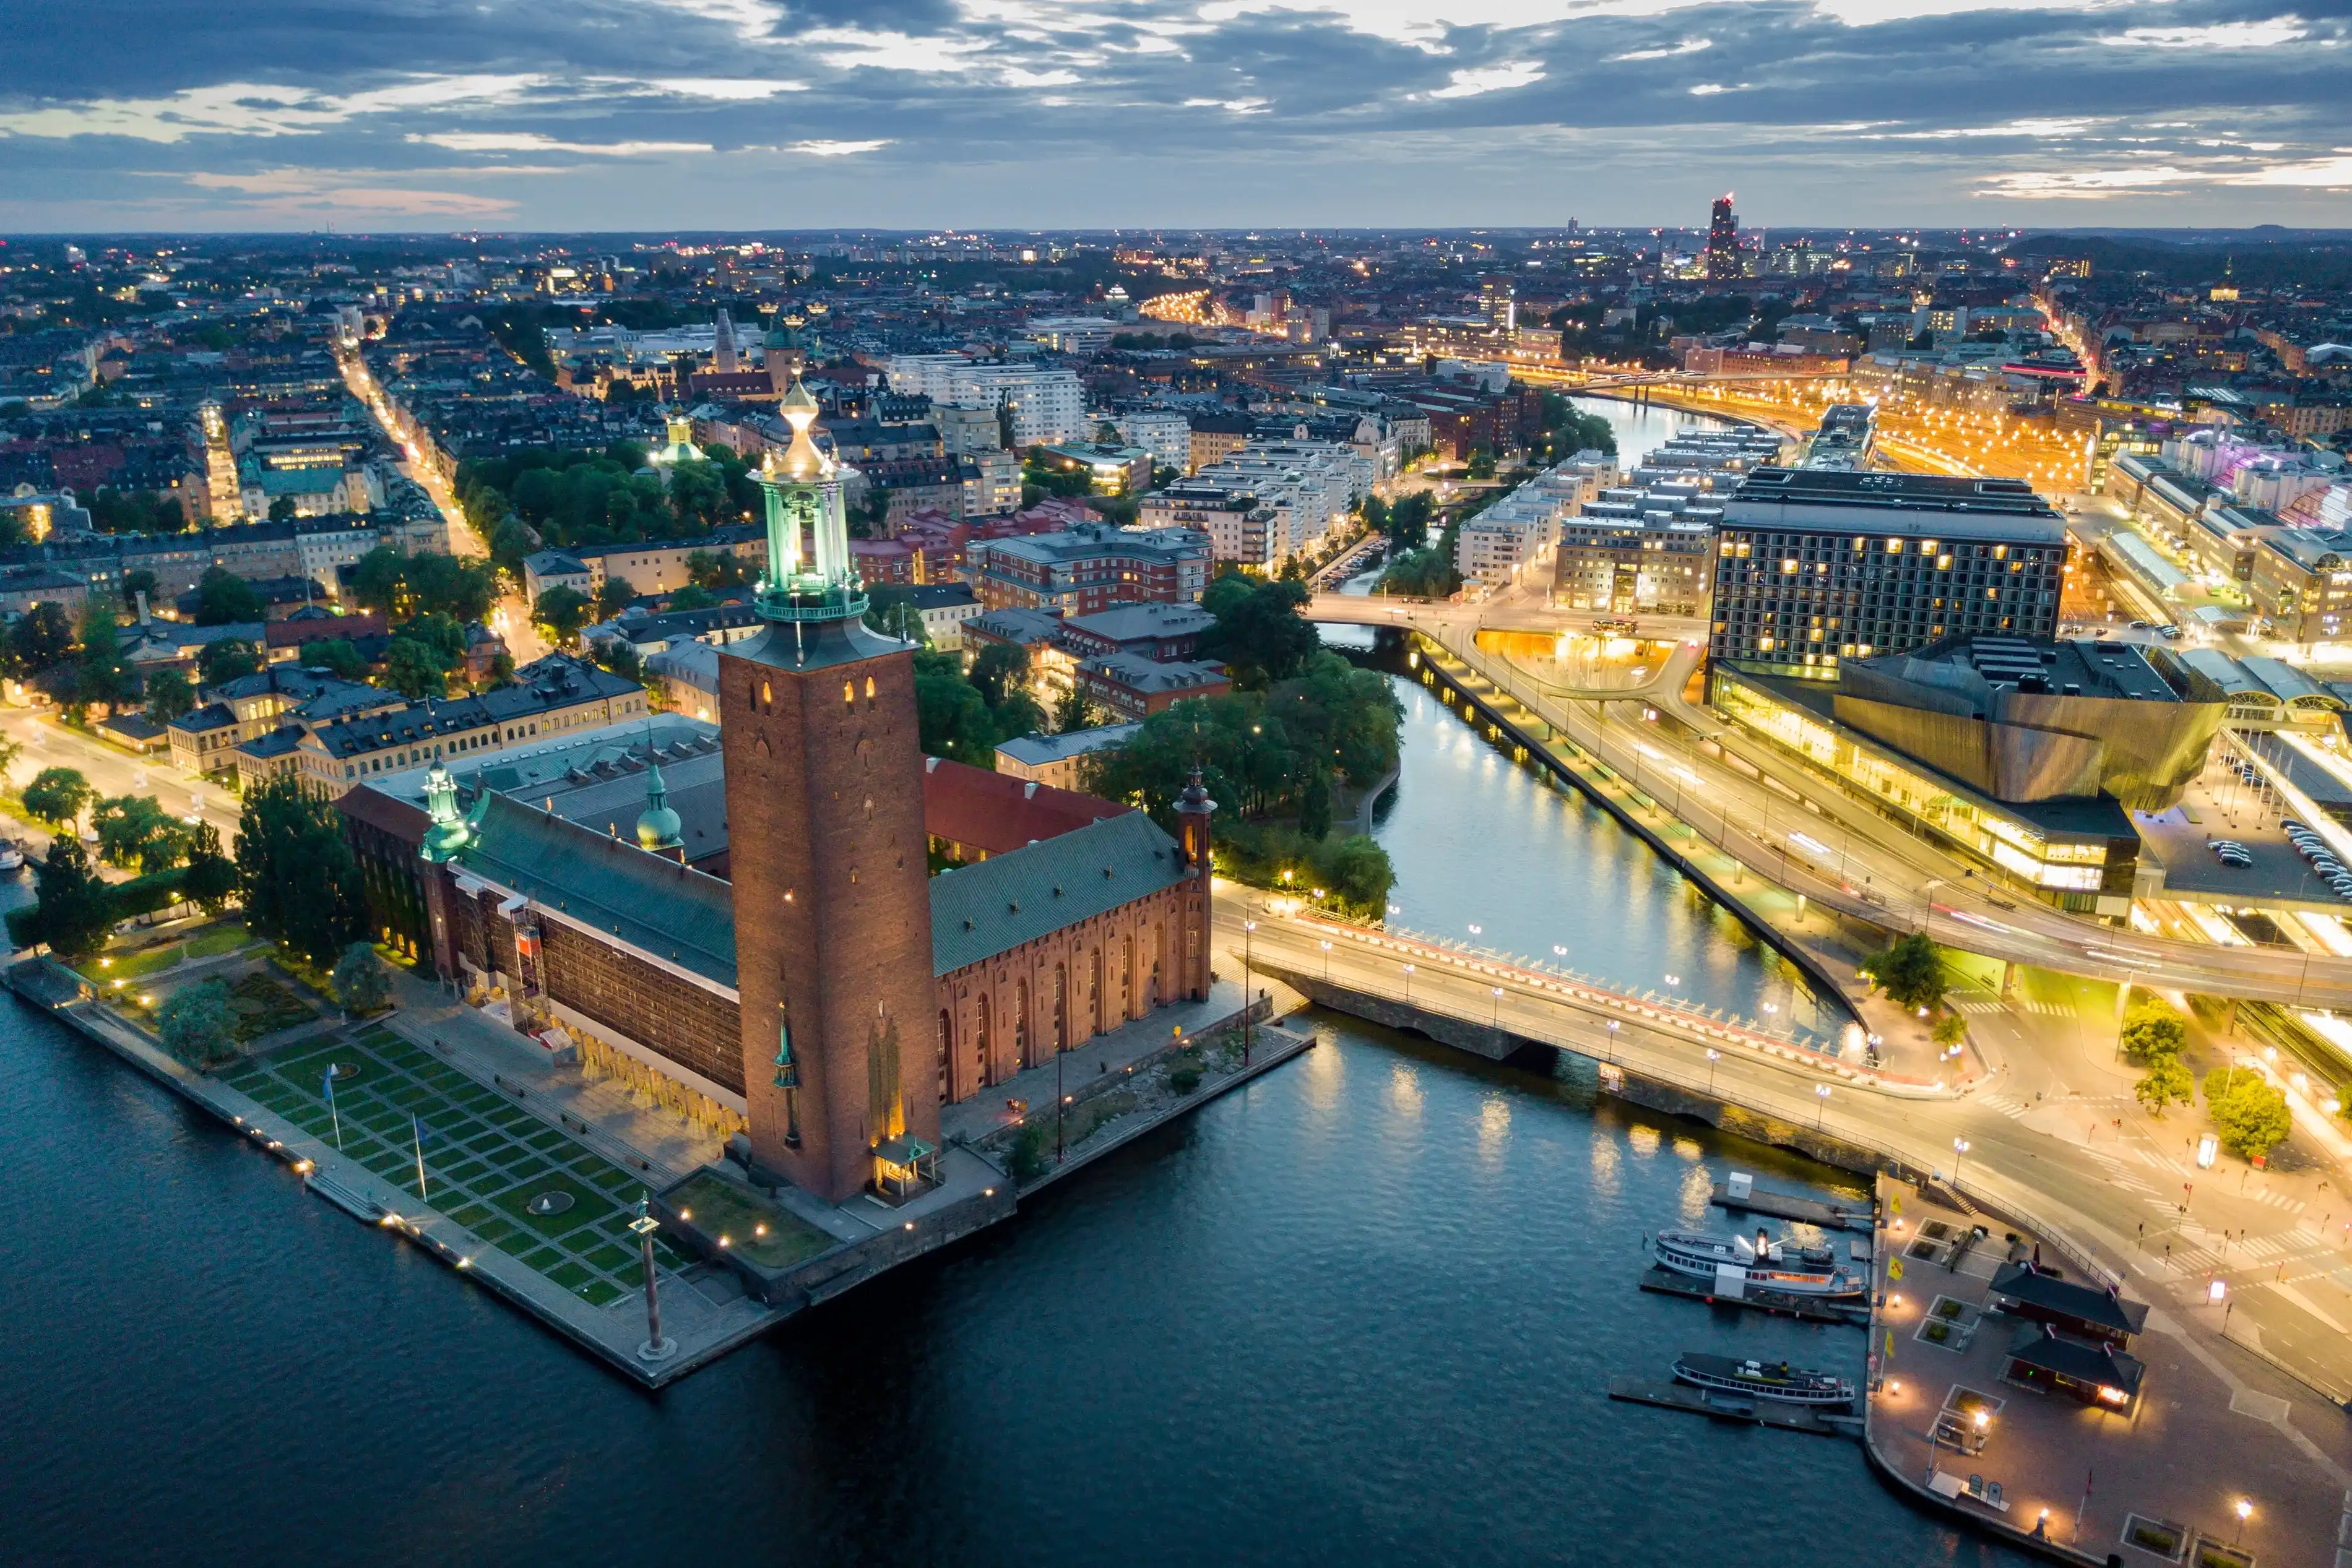 Stockholm hotels. Best hotels in Stockholm, Sweden